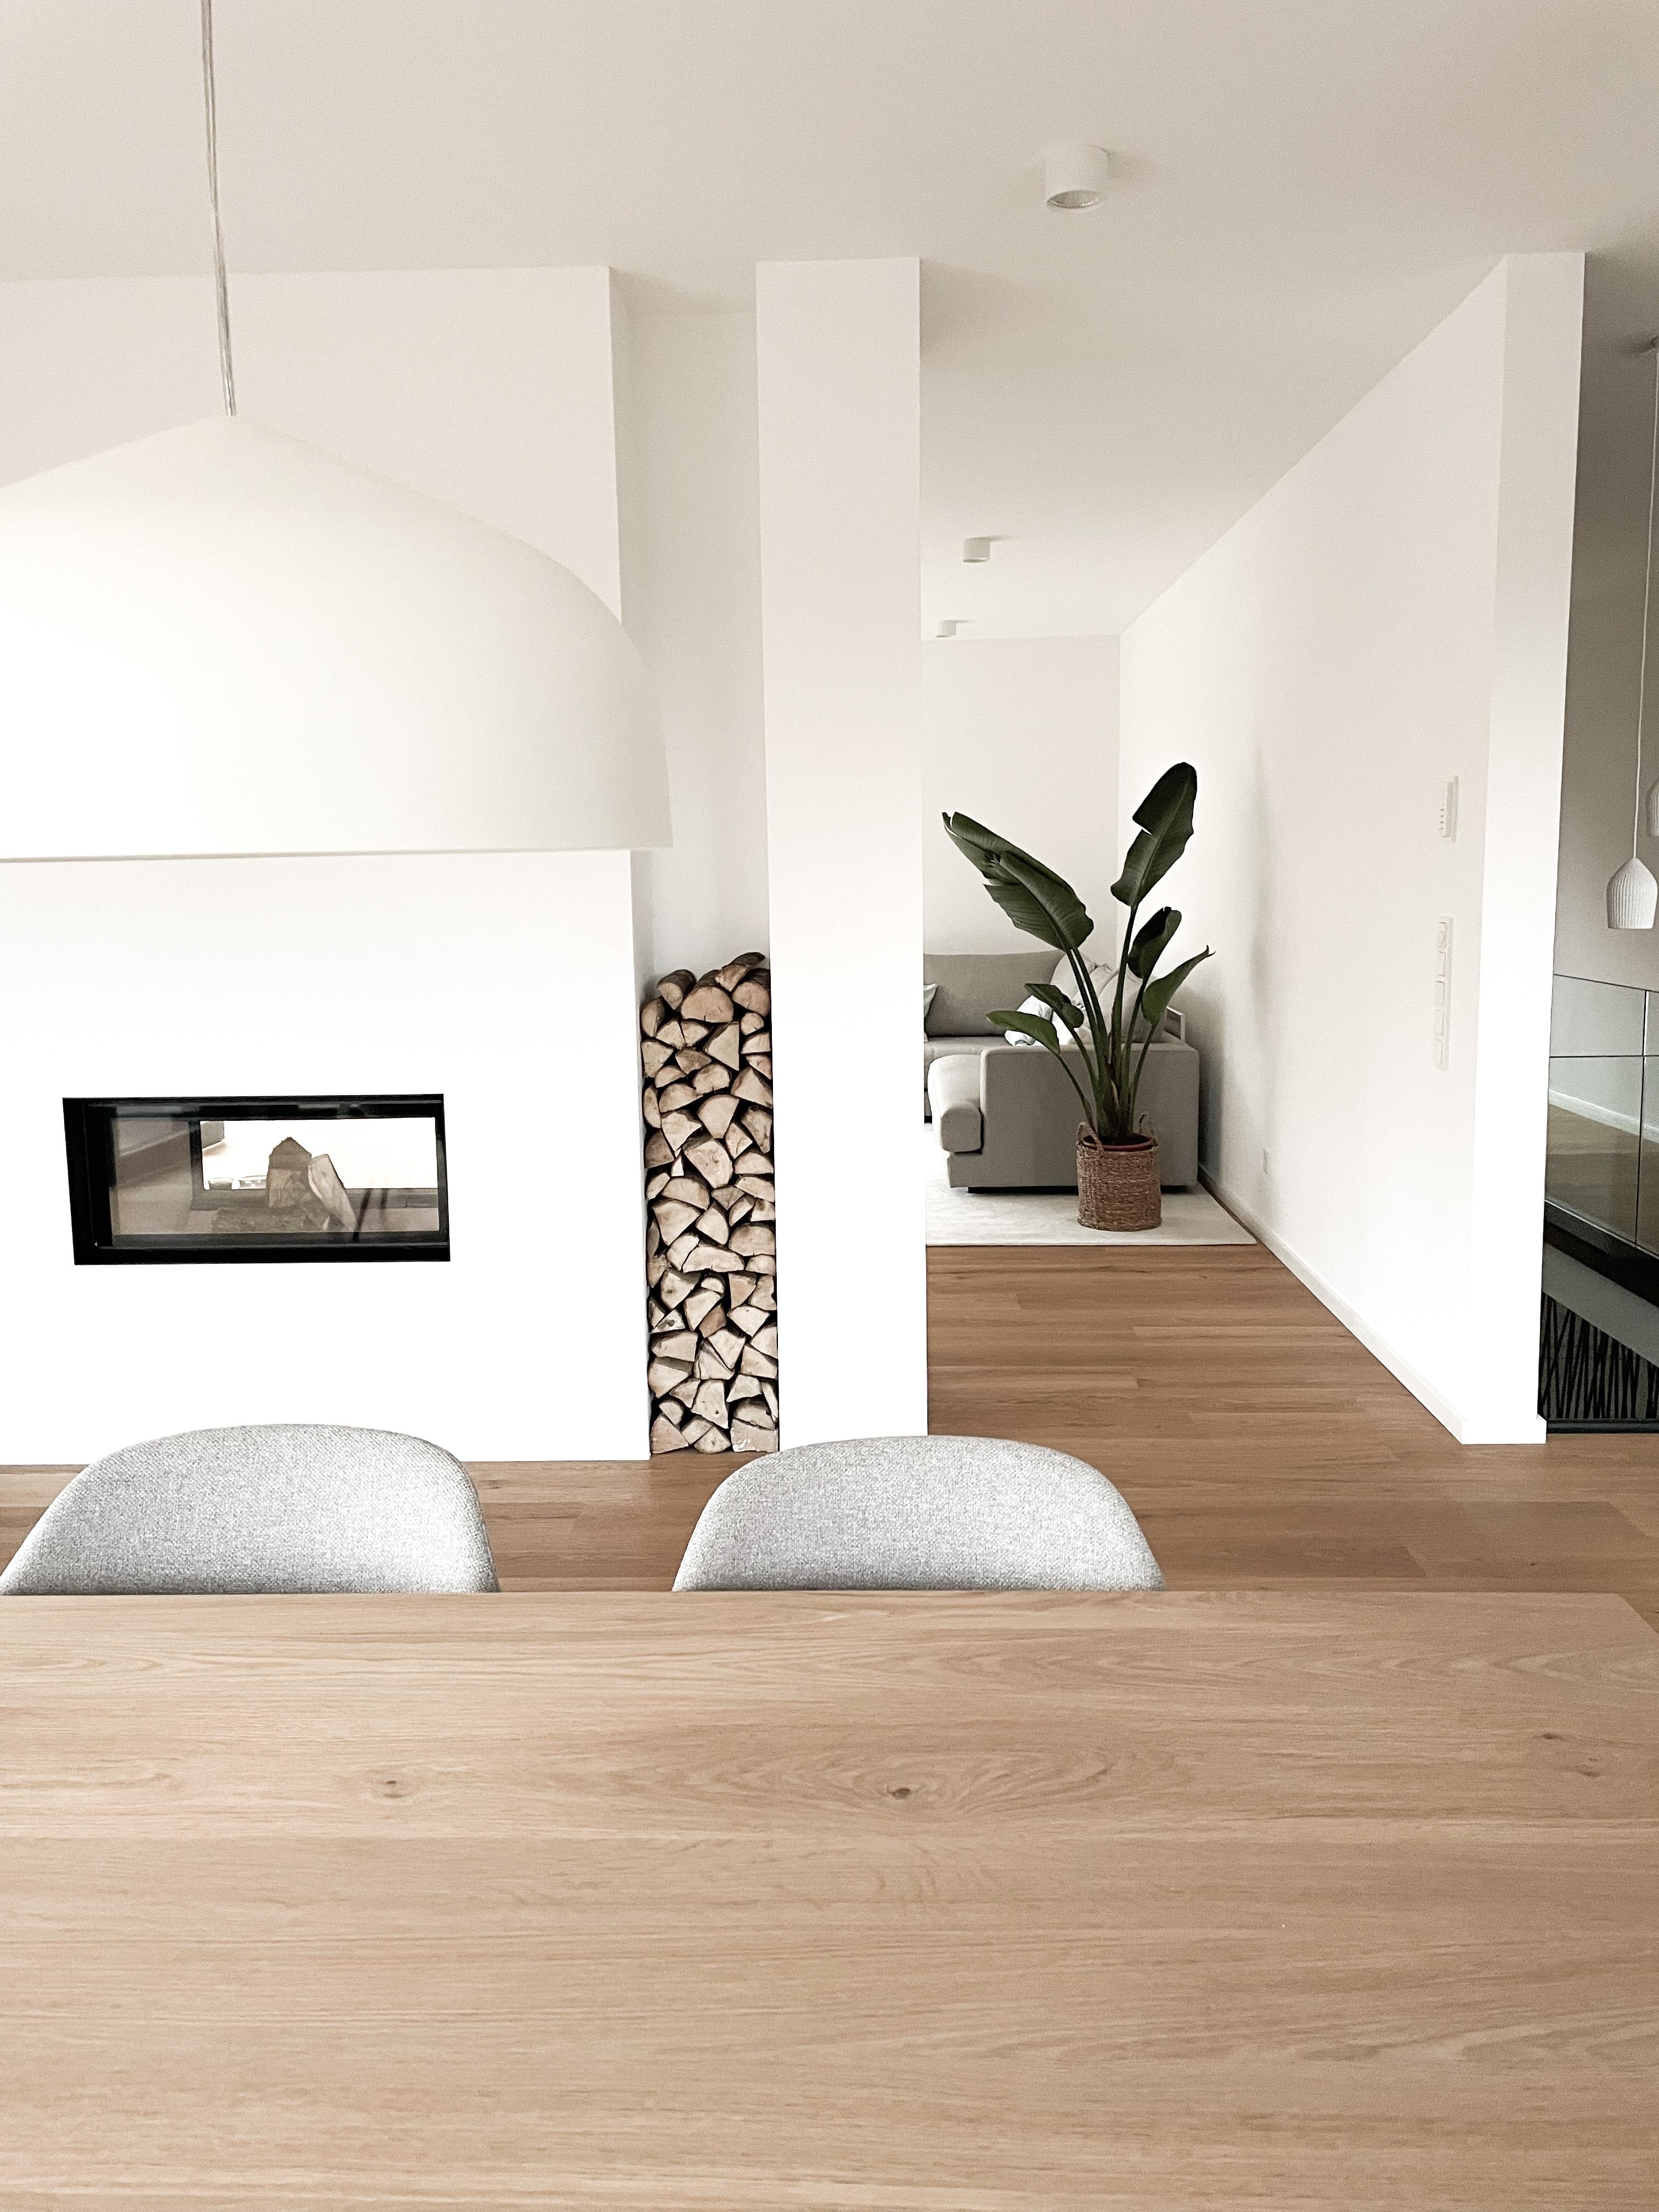 Kamin als Raumteiler zwischen Esszimmer & Wohnzimmer 🌿🌿
#tunnelkamin #wohnblog #couchmagazin